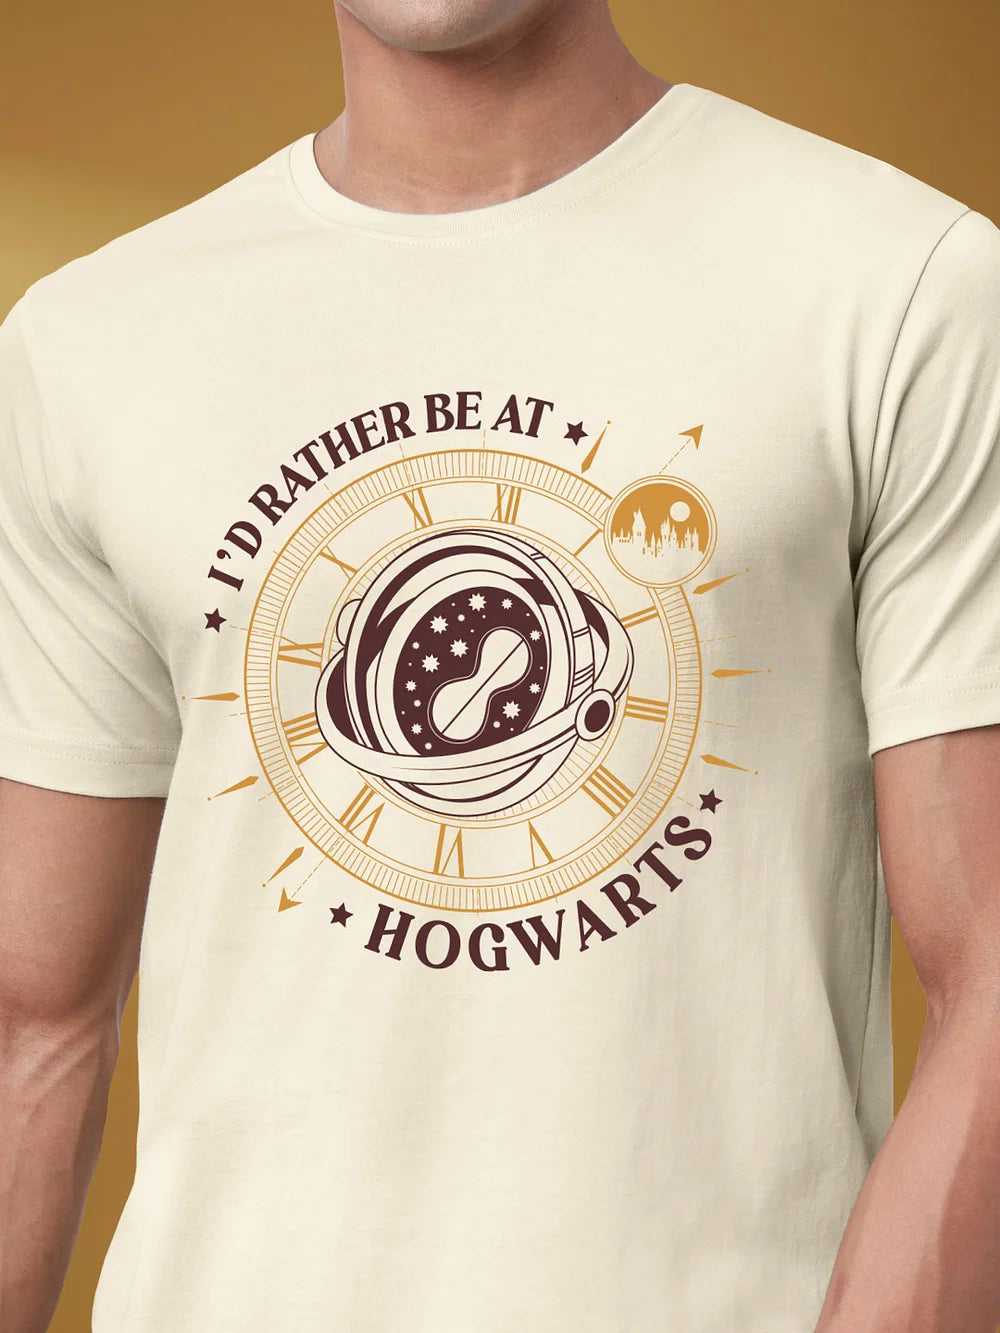 Harry Potter Rather Be At Hogwarts (UK version)